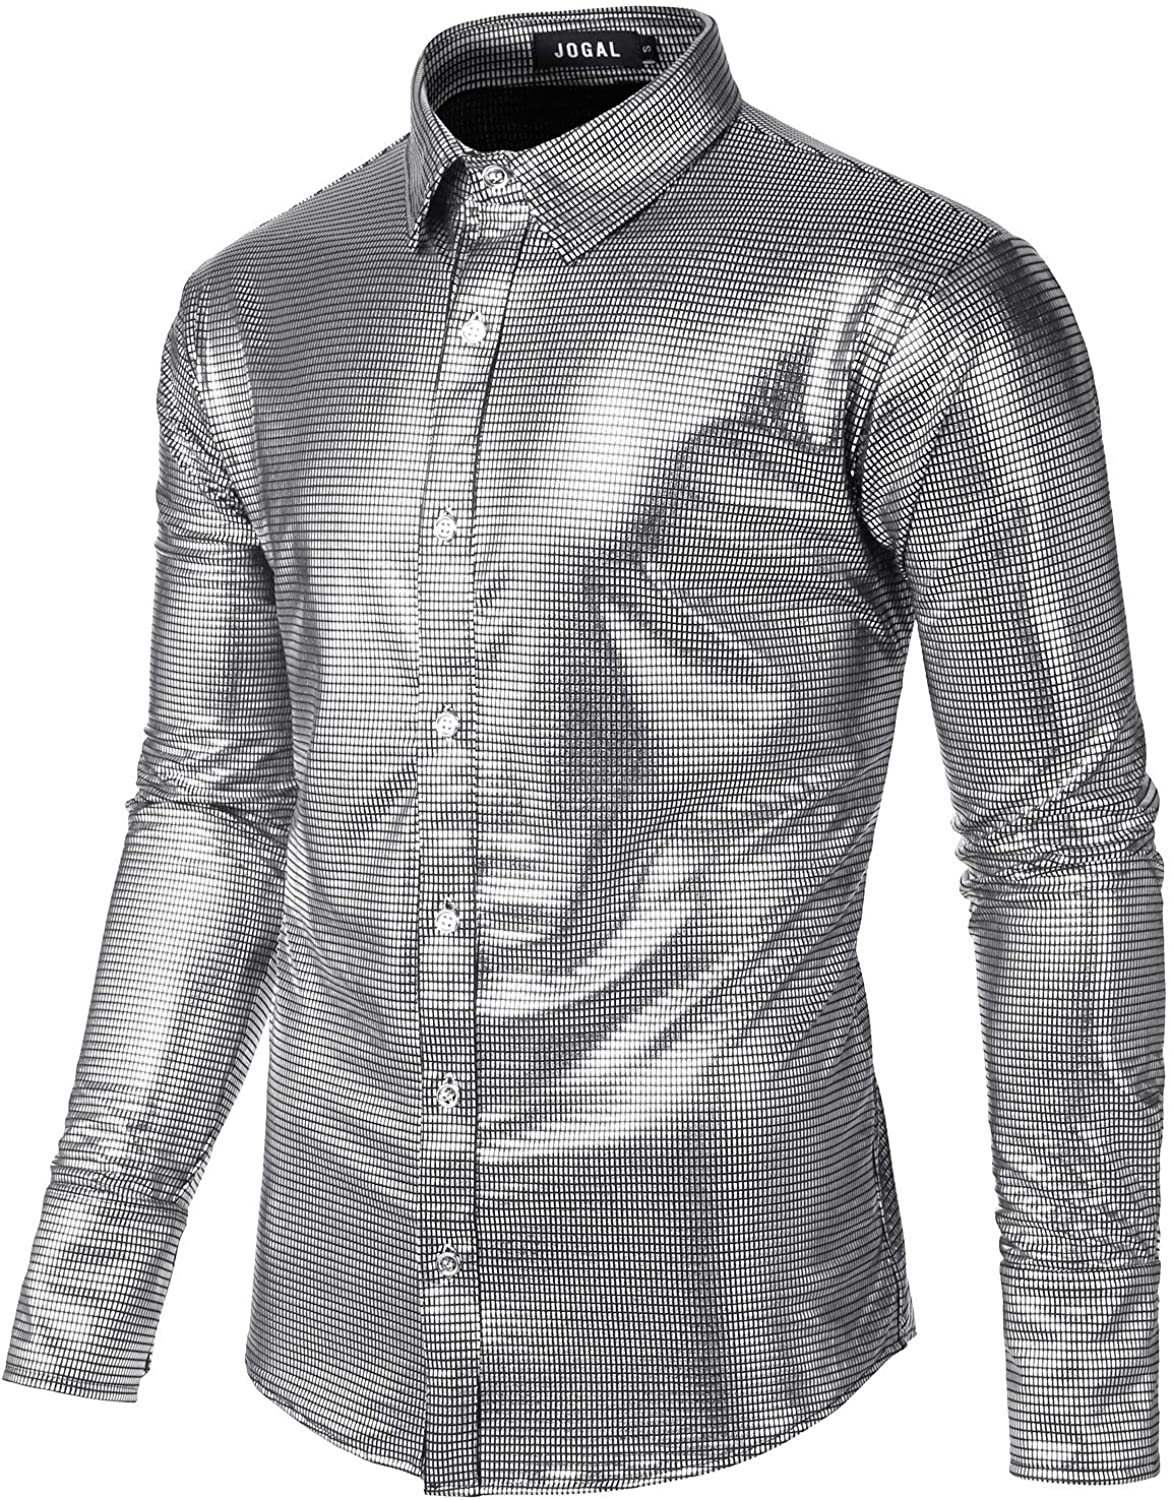 JOGAL Men's Dress Shirt Sequins Button Down Long Sleeve Shirts 70s ...